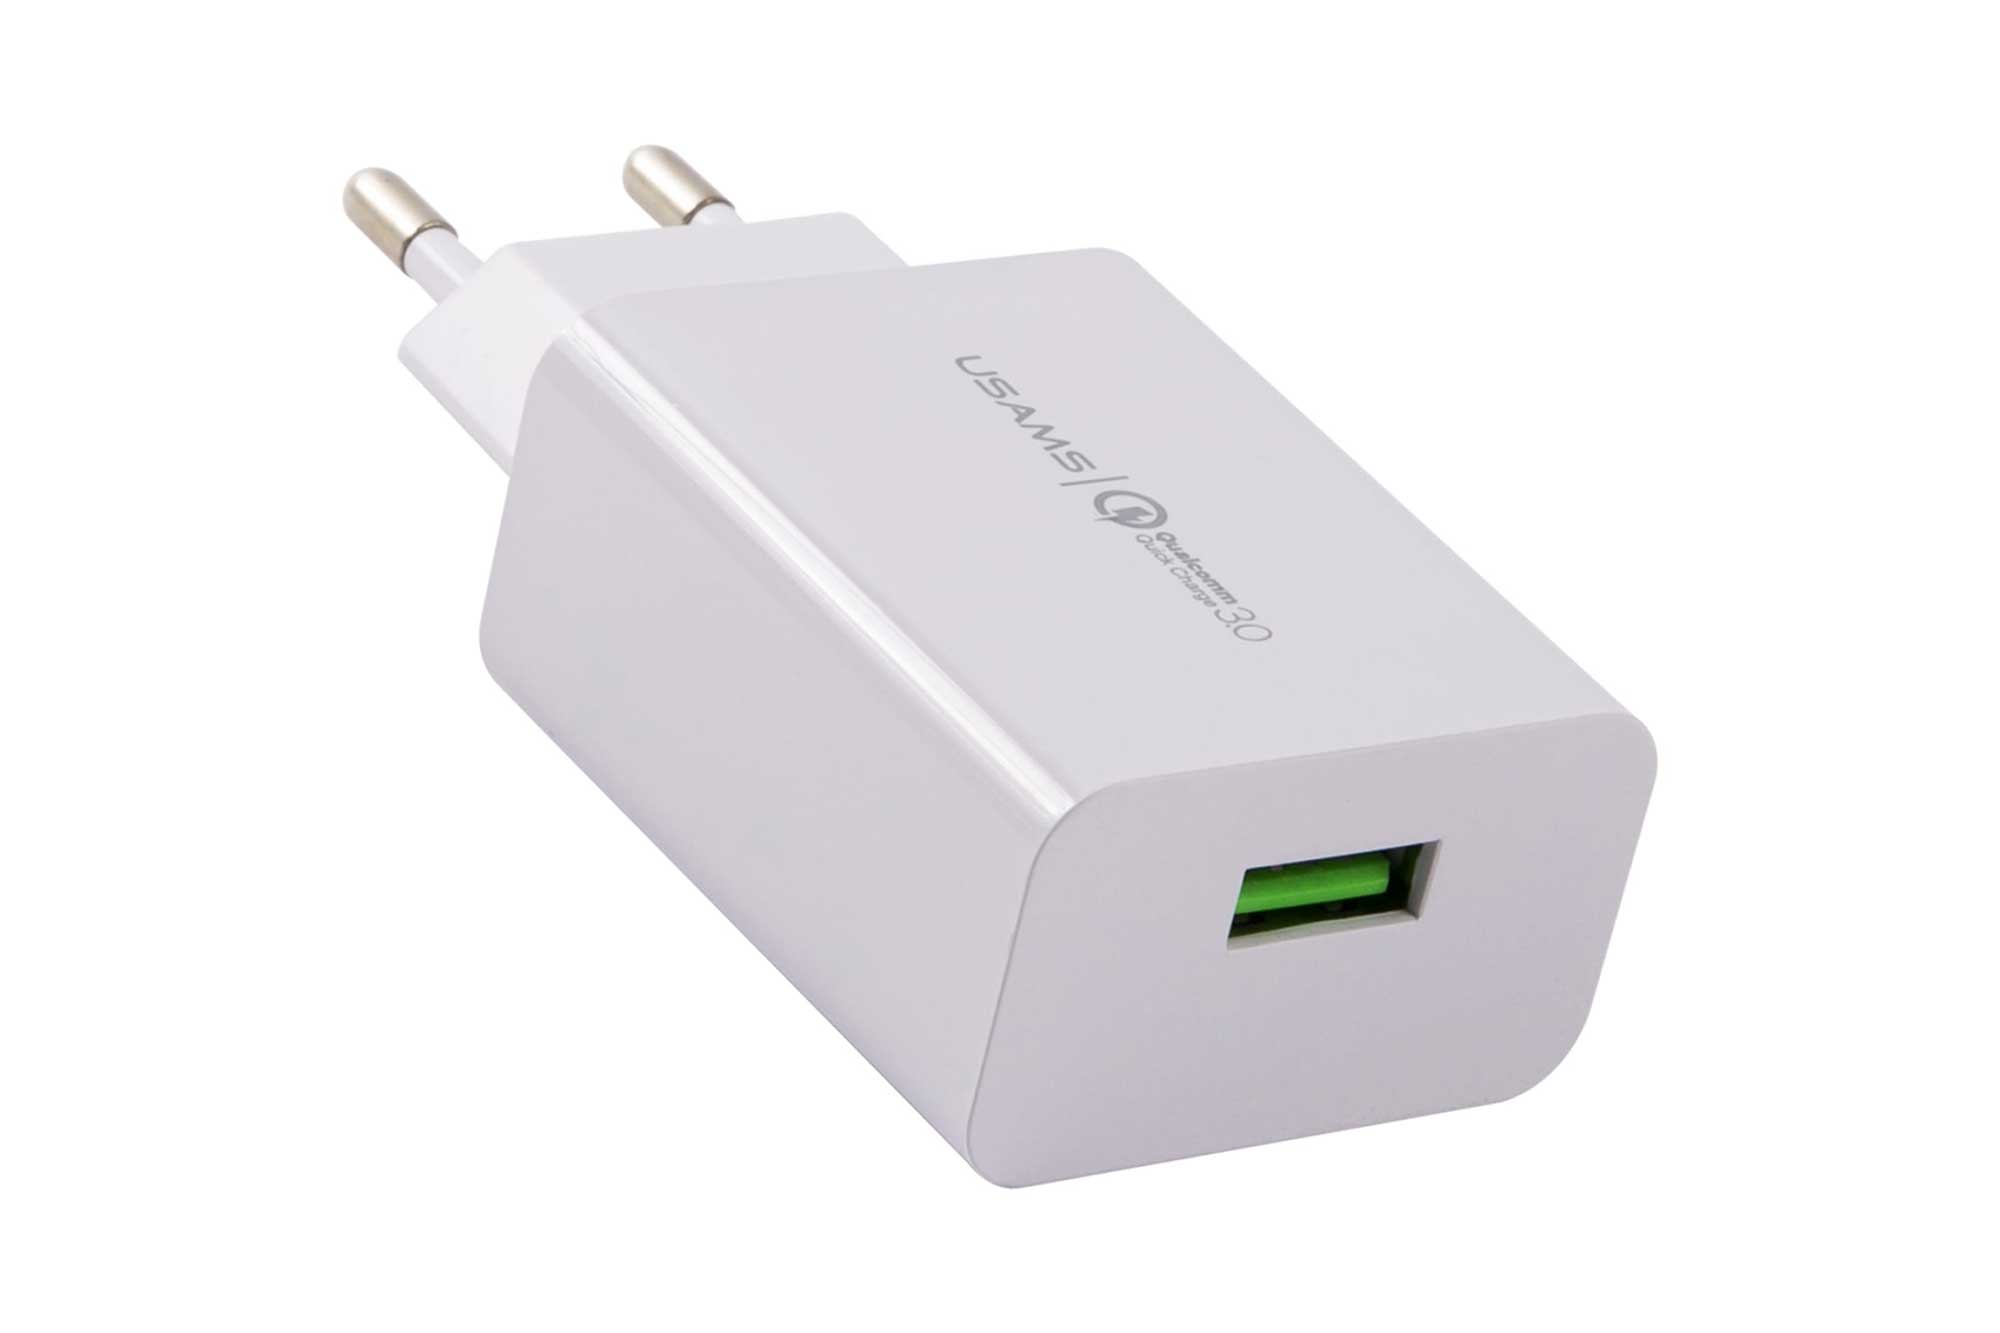 Сетевое зарядное устройство USAMS - (Модель - US-CC083) T22 1 USB QC3.0, 3A, 18W, белый (CC83TC01) сетевое зарядное устройство usams модель t21 charger kit 1 usb t18 2 1a кабель micro usb 1m белый t21ocmc01